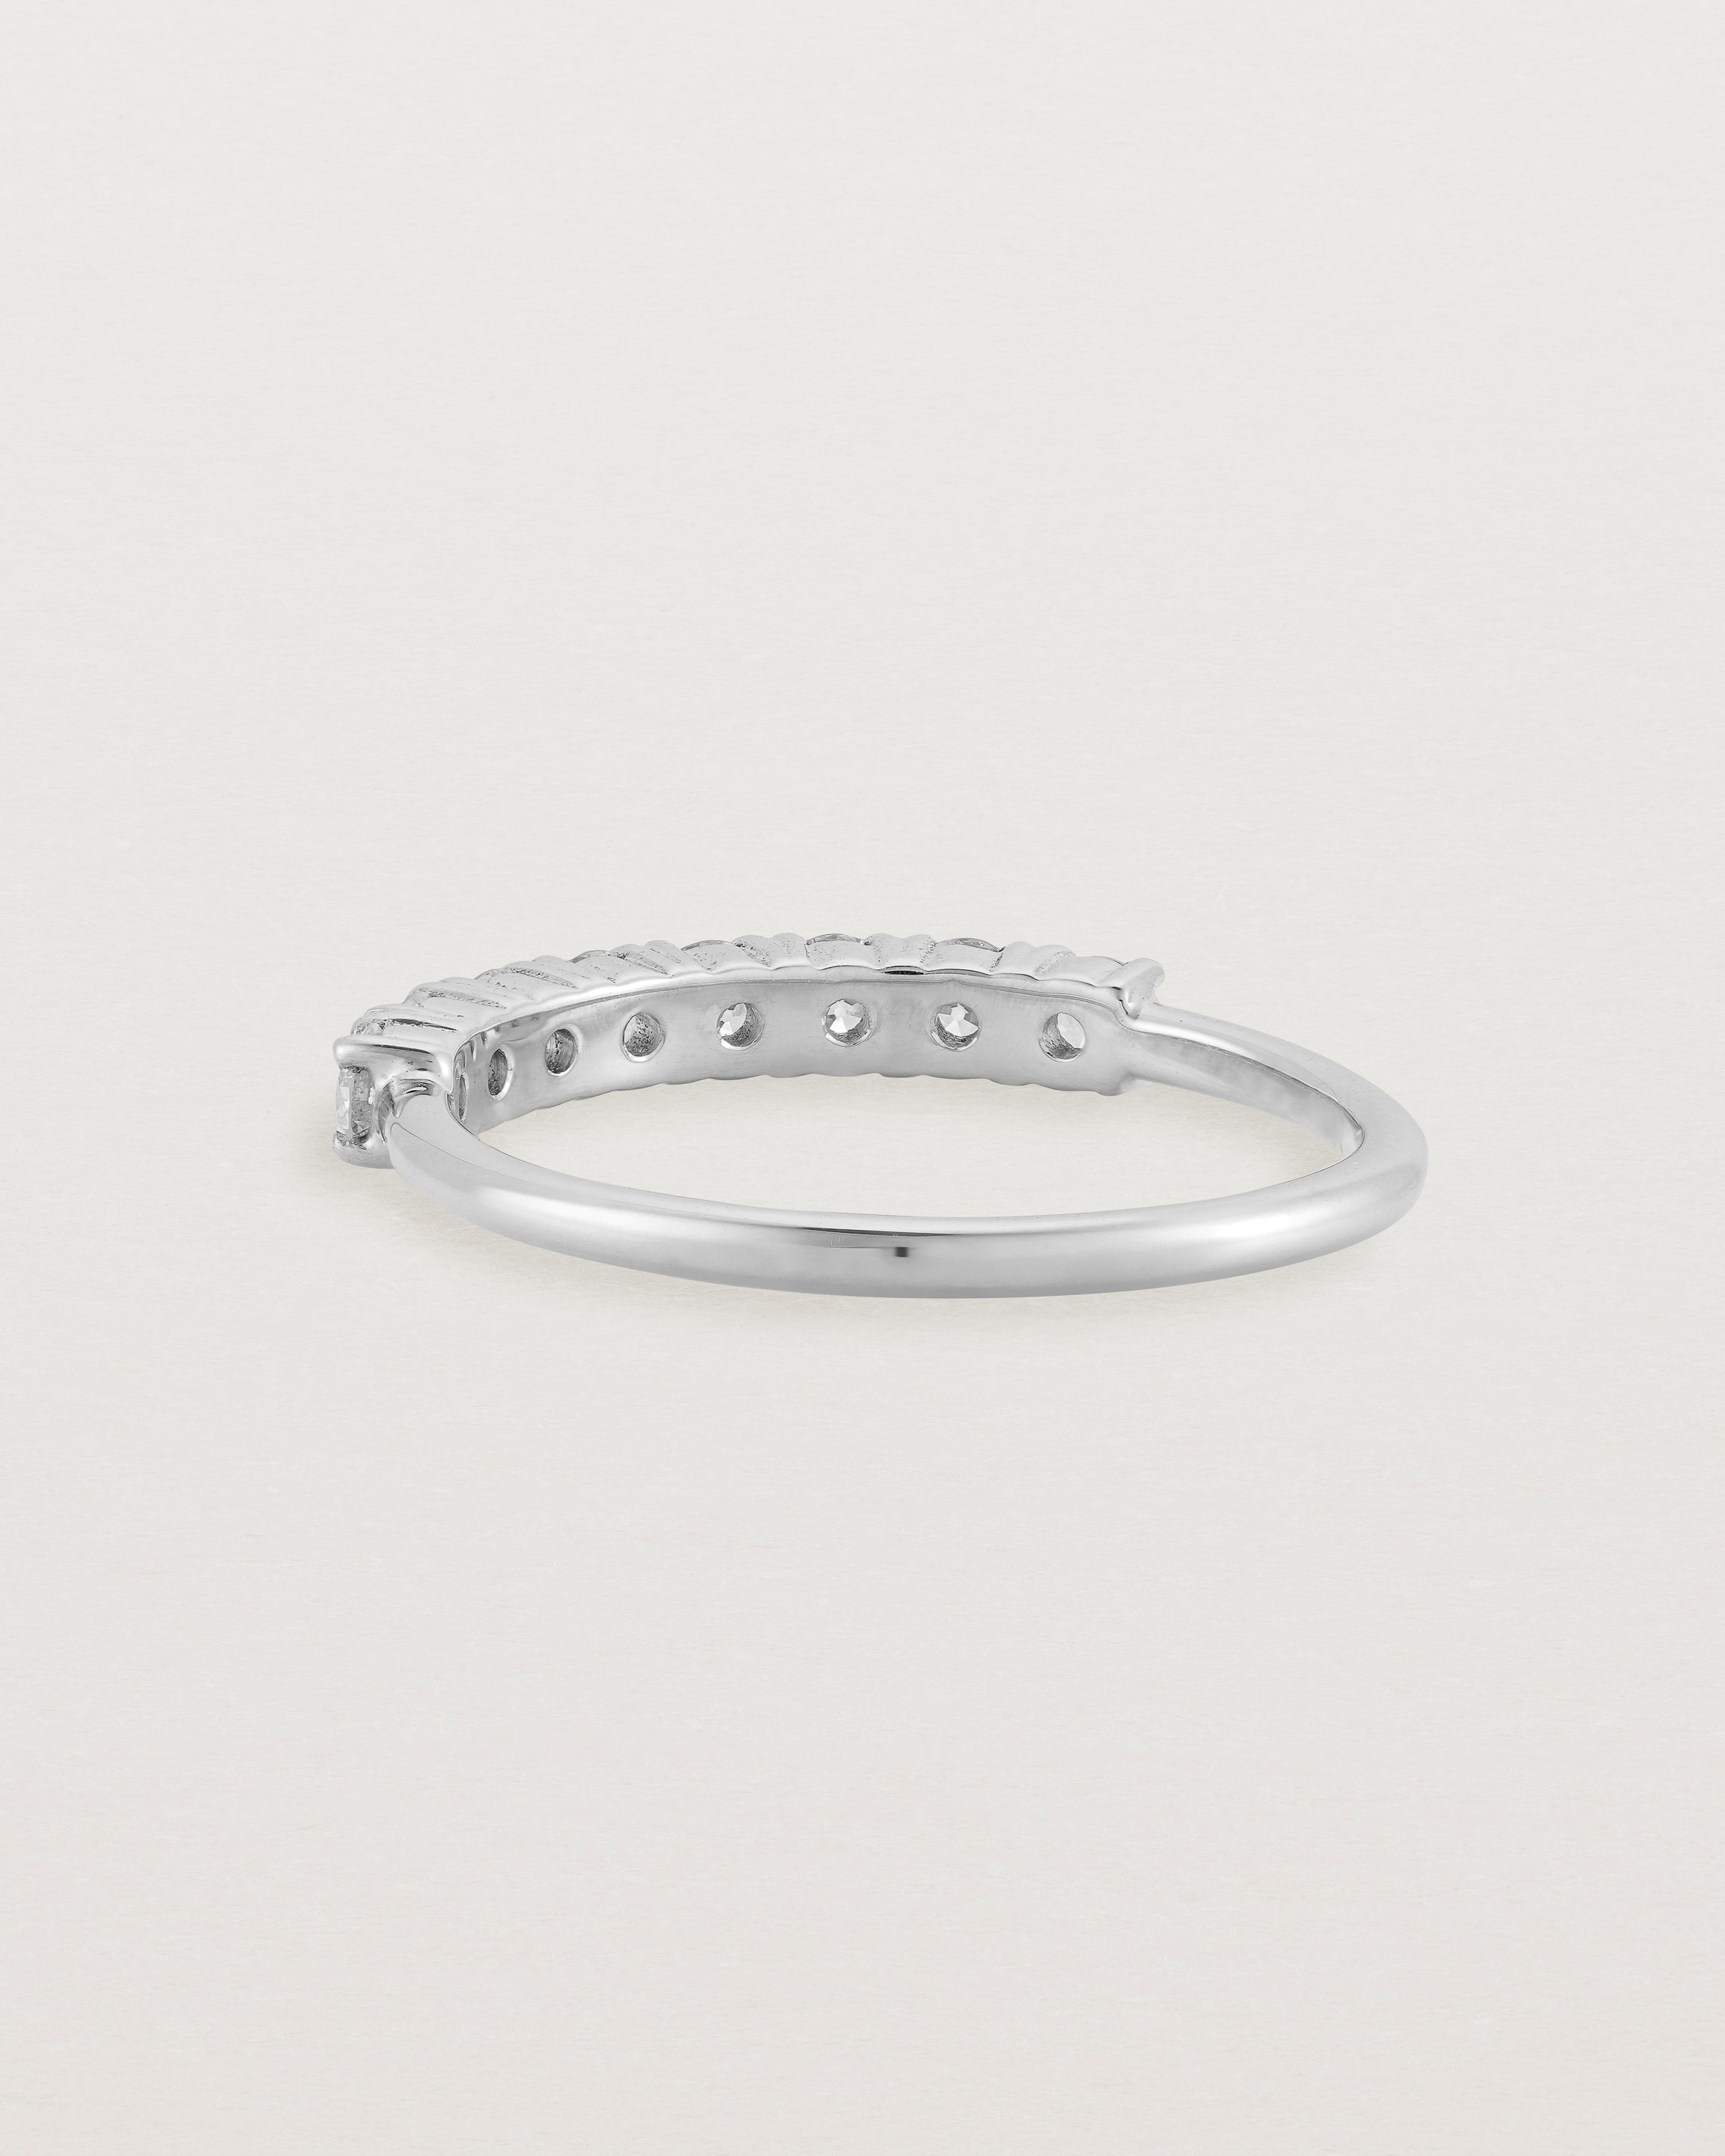 White Gold Diamond ring featuring seven white diamonds